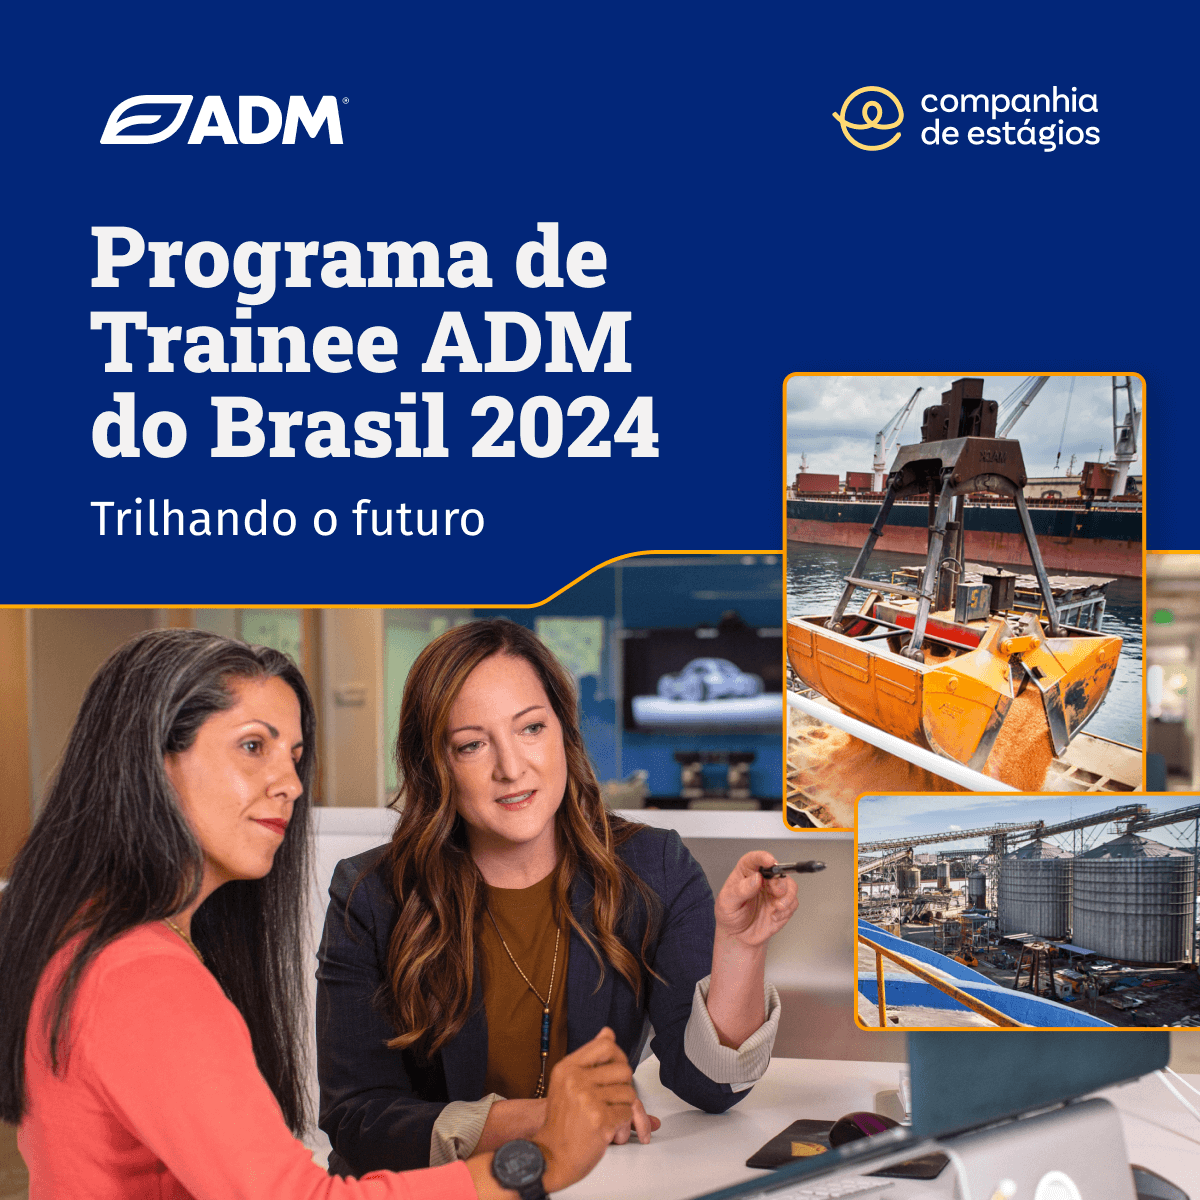 Programa de Trainee ADM do Brasil 2024. Trilhando o futuro. Foto de duas senhoras sentadas olhando para tela de computador, com fotos ao lado de silos e transporte em navios.